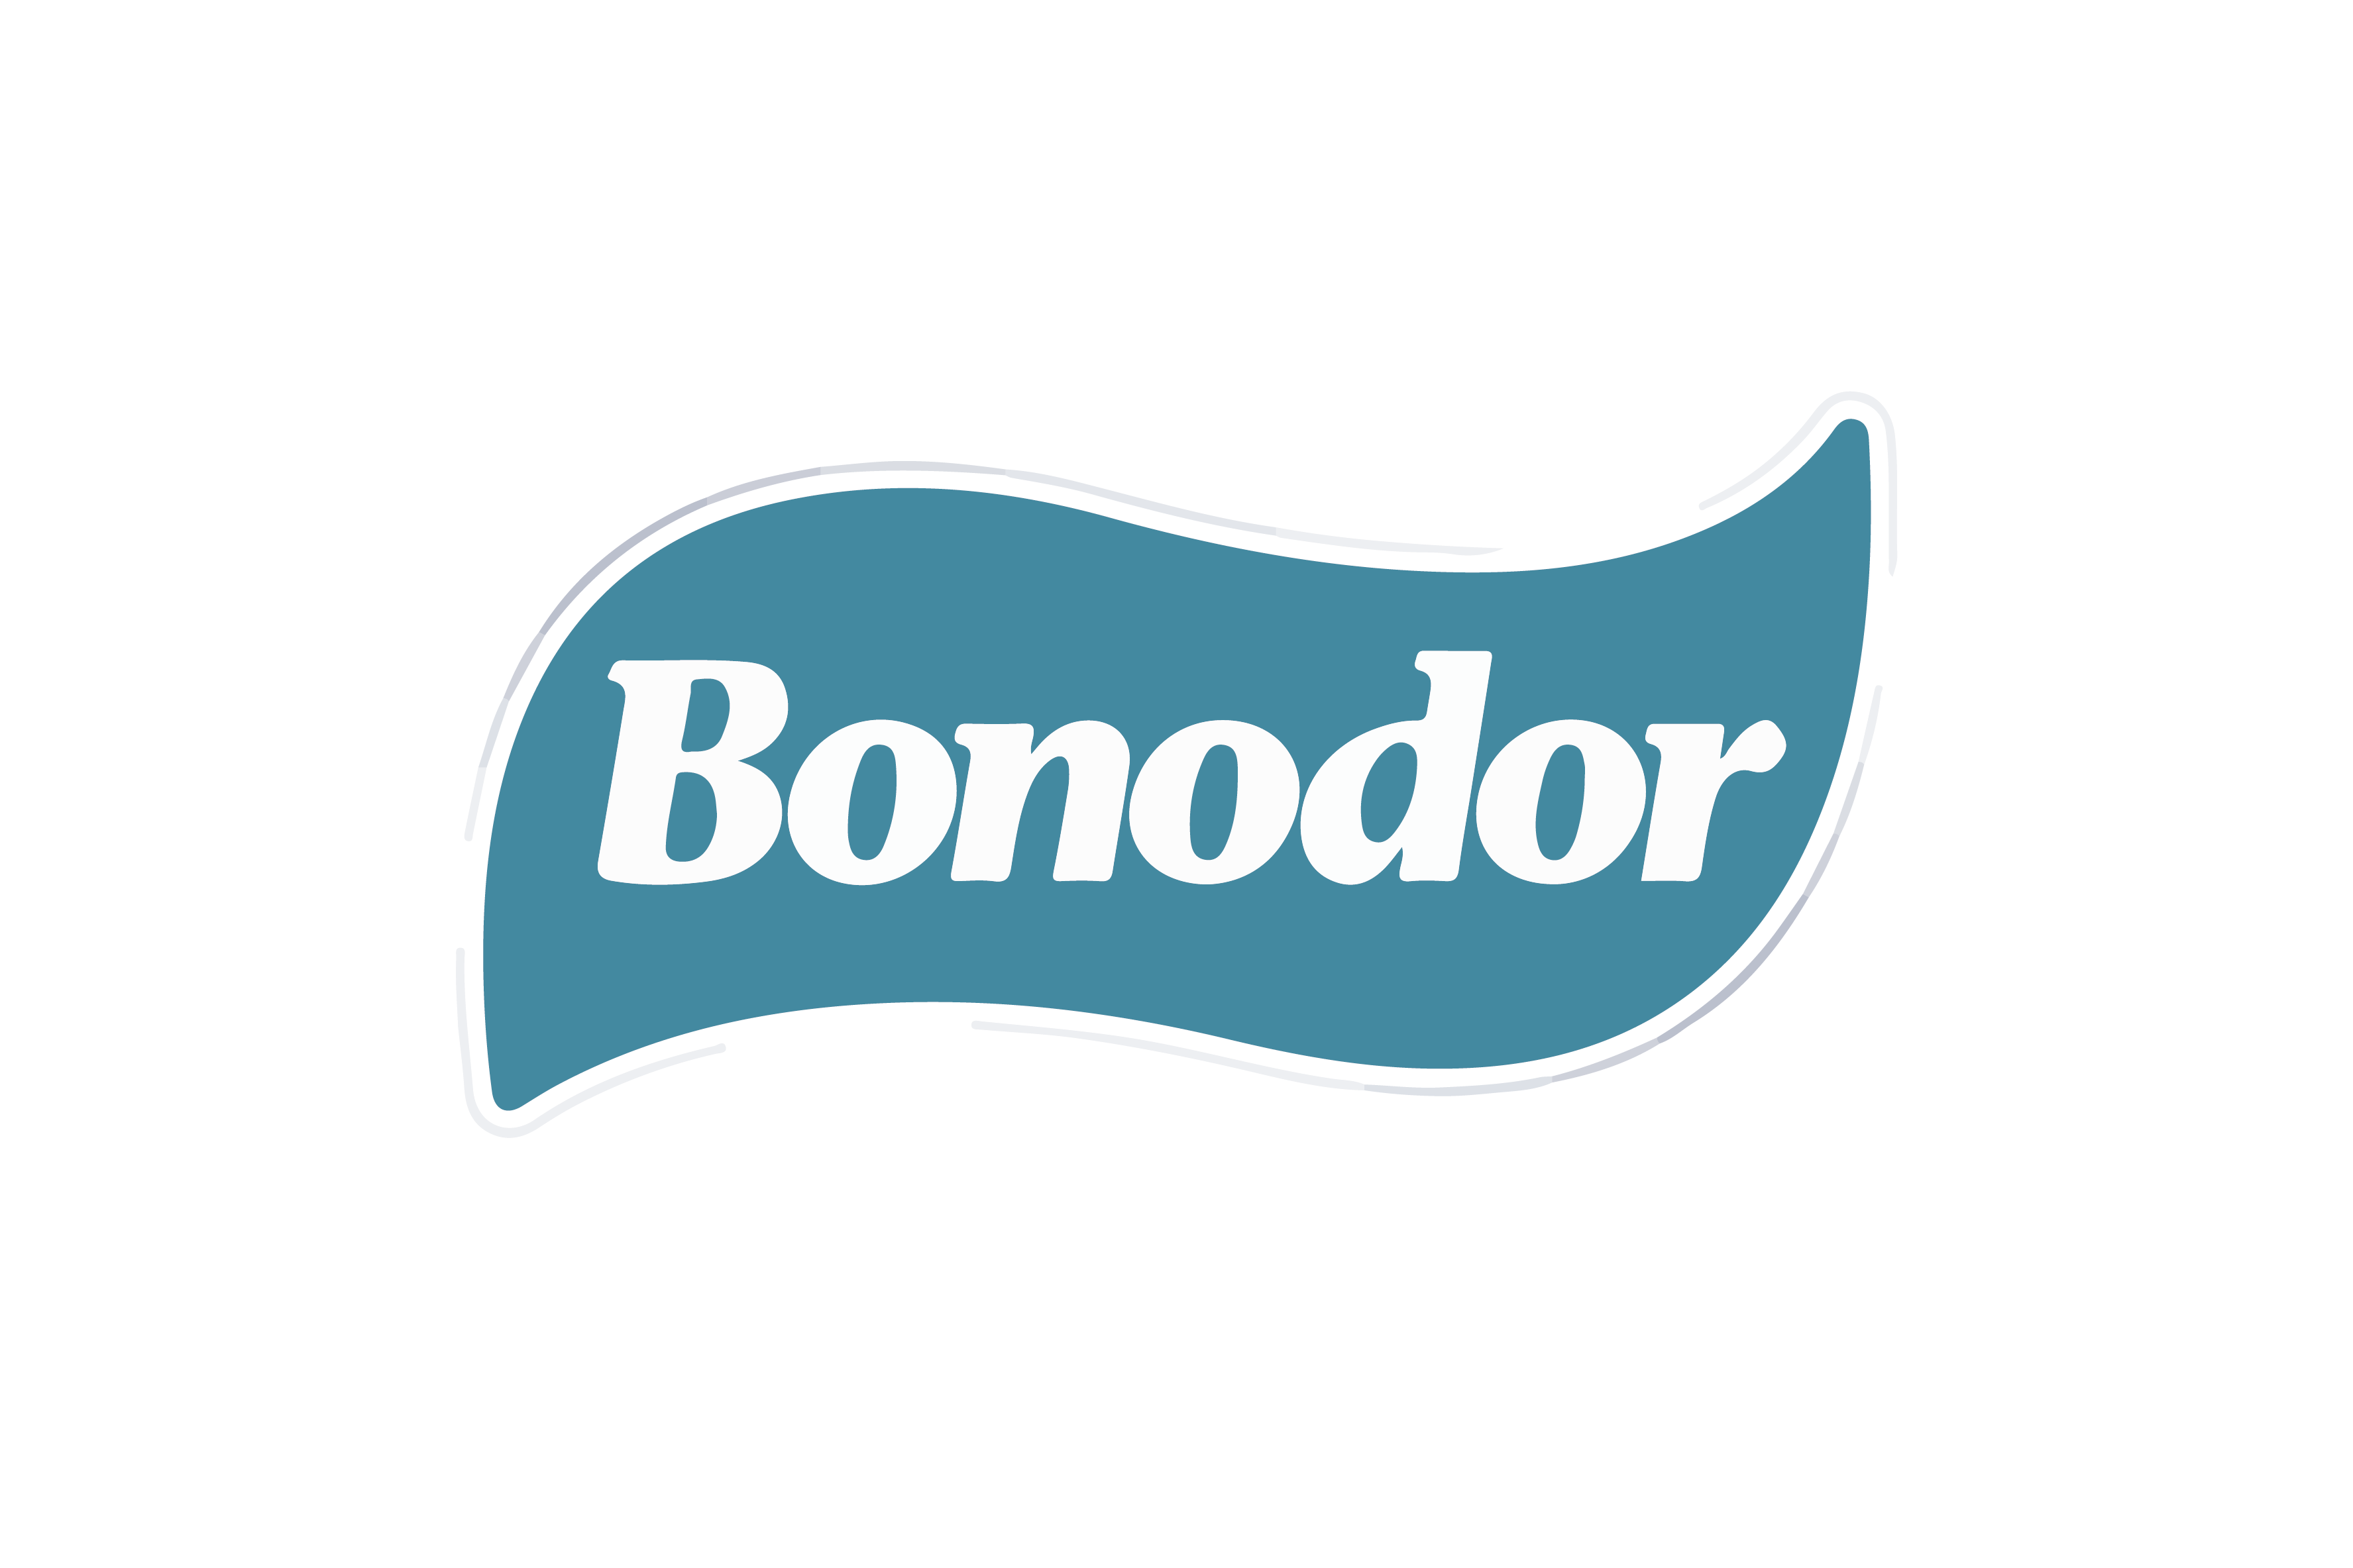 bonodor-final-ii1.png